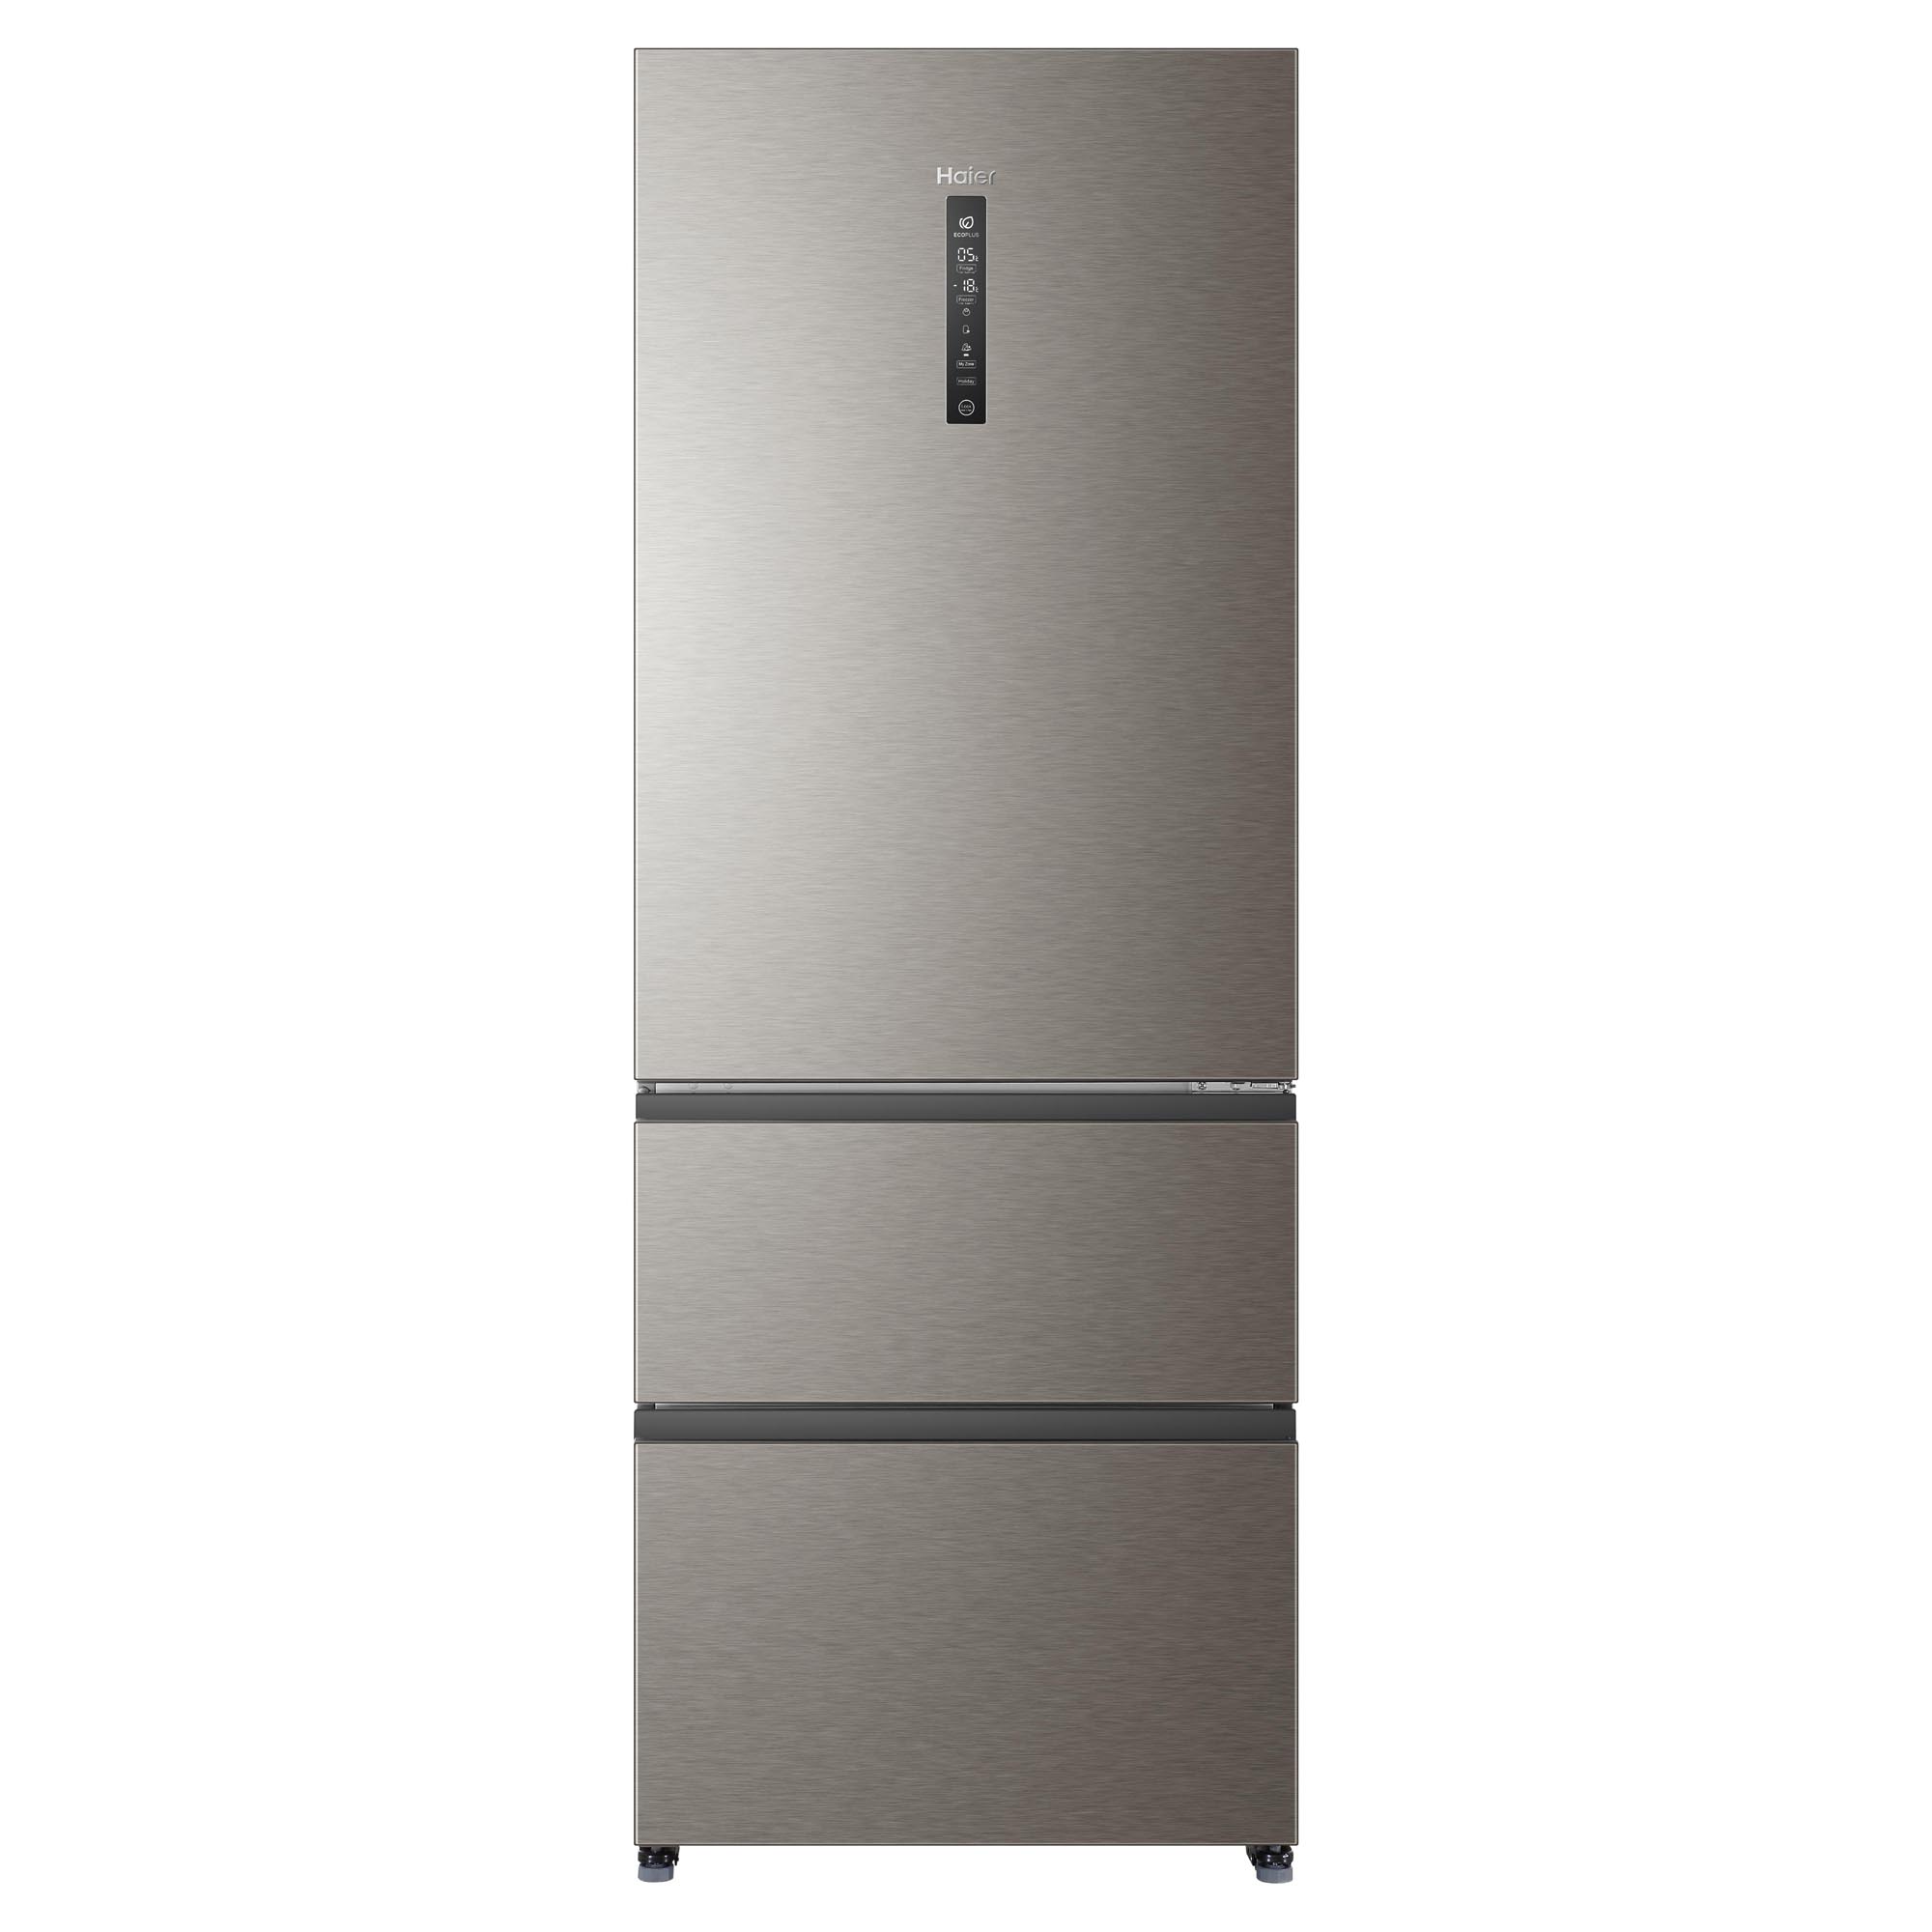 Производитель хайер отзывы. Холодильник Haier a4f742cmg. Холодильник Haier a4f742cmg, серебристый. Холодильник Хайер 742. Холодильник многодверный Haier a4f742cmg.